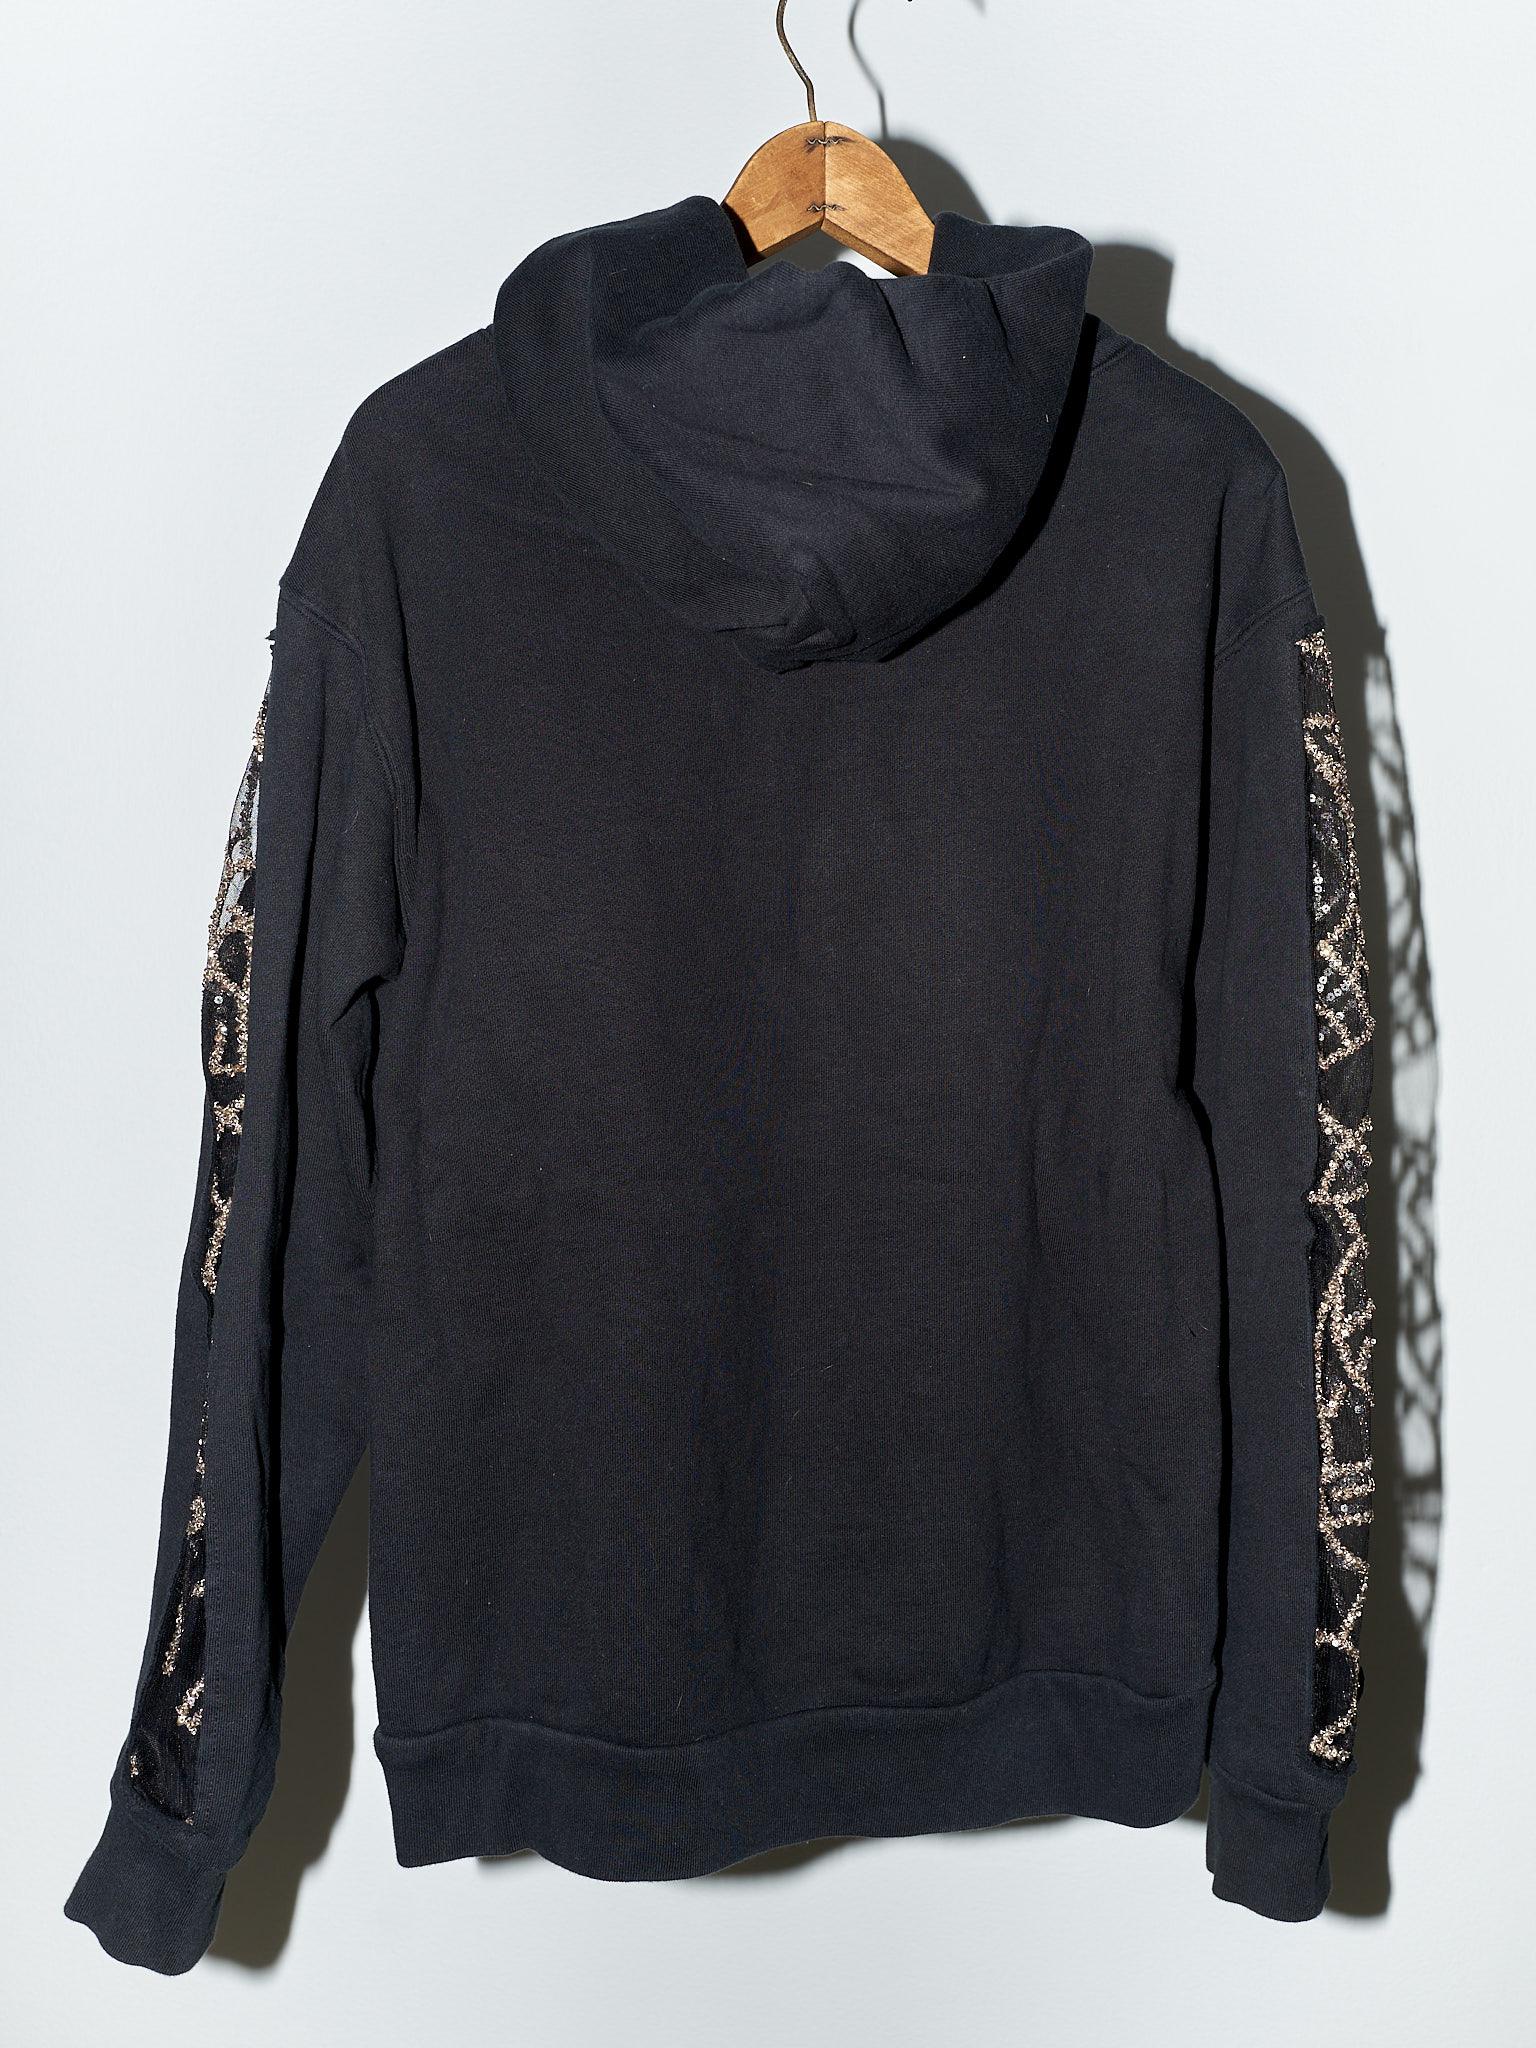 Black Hoodie Sweatshirt Transparent Sheer Mesh Chrystal Embroidery J Dauphin 6